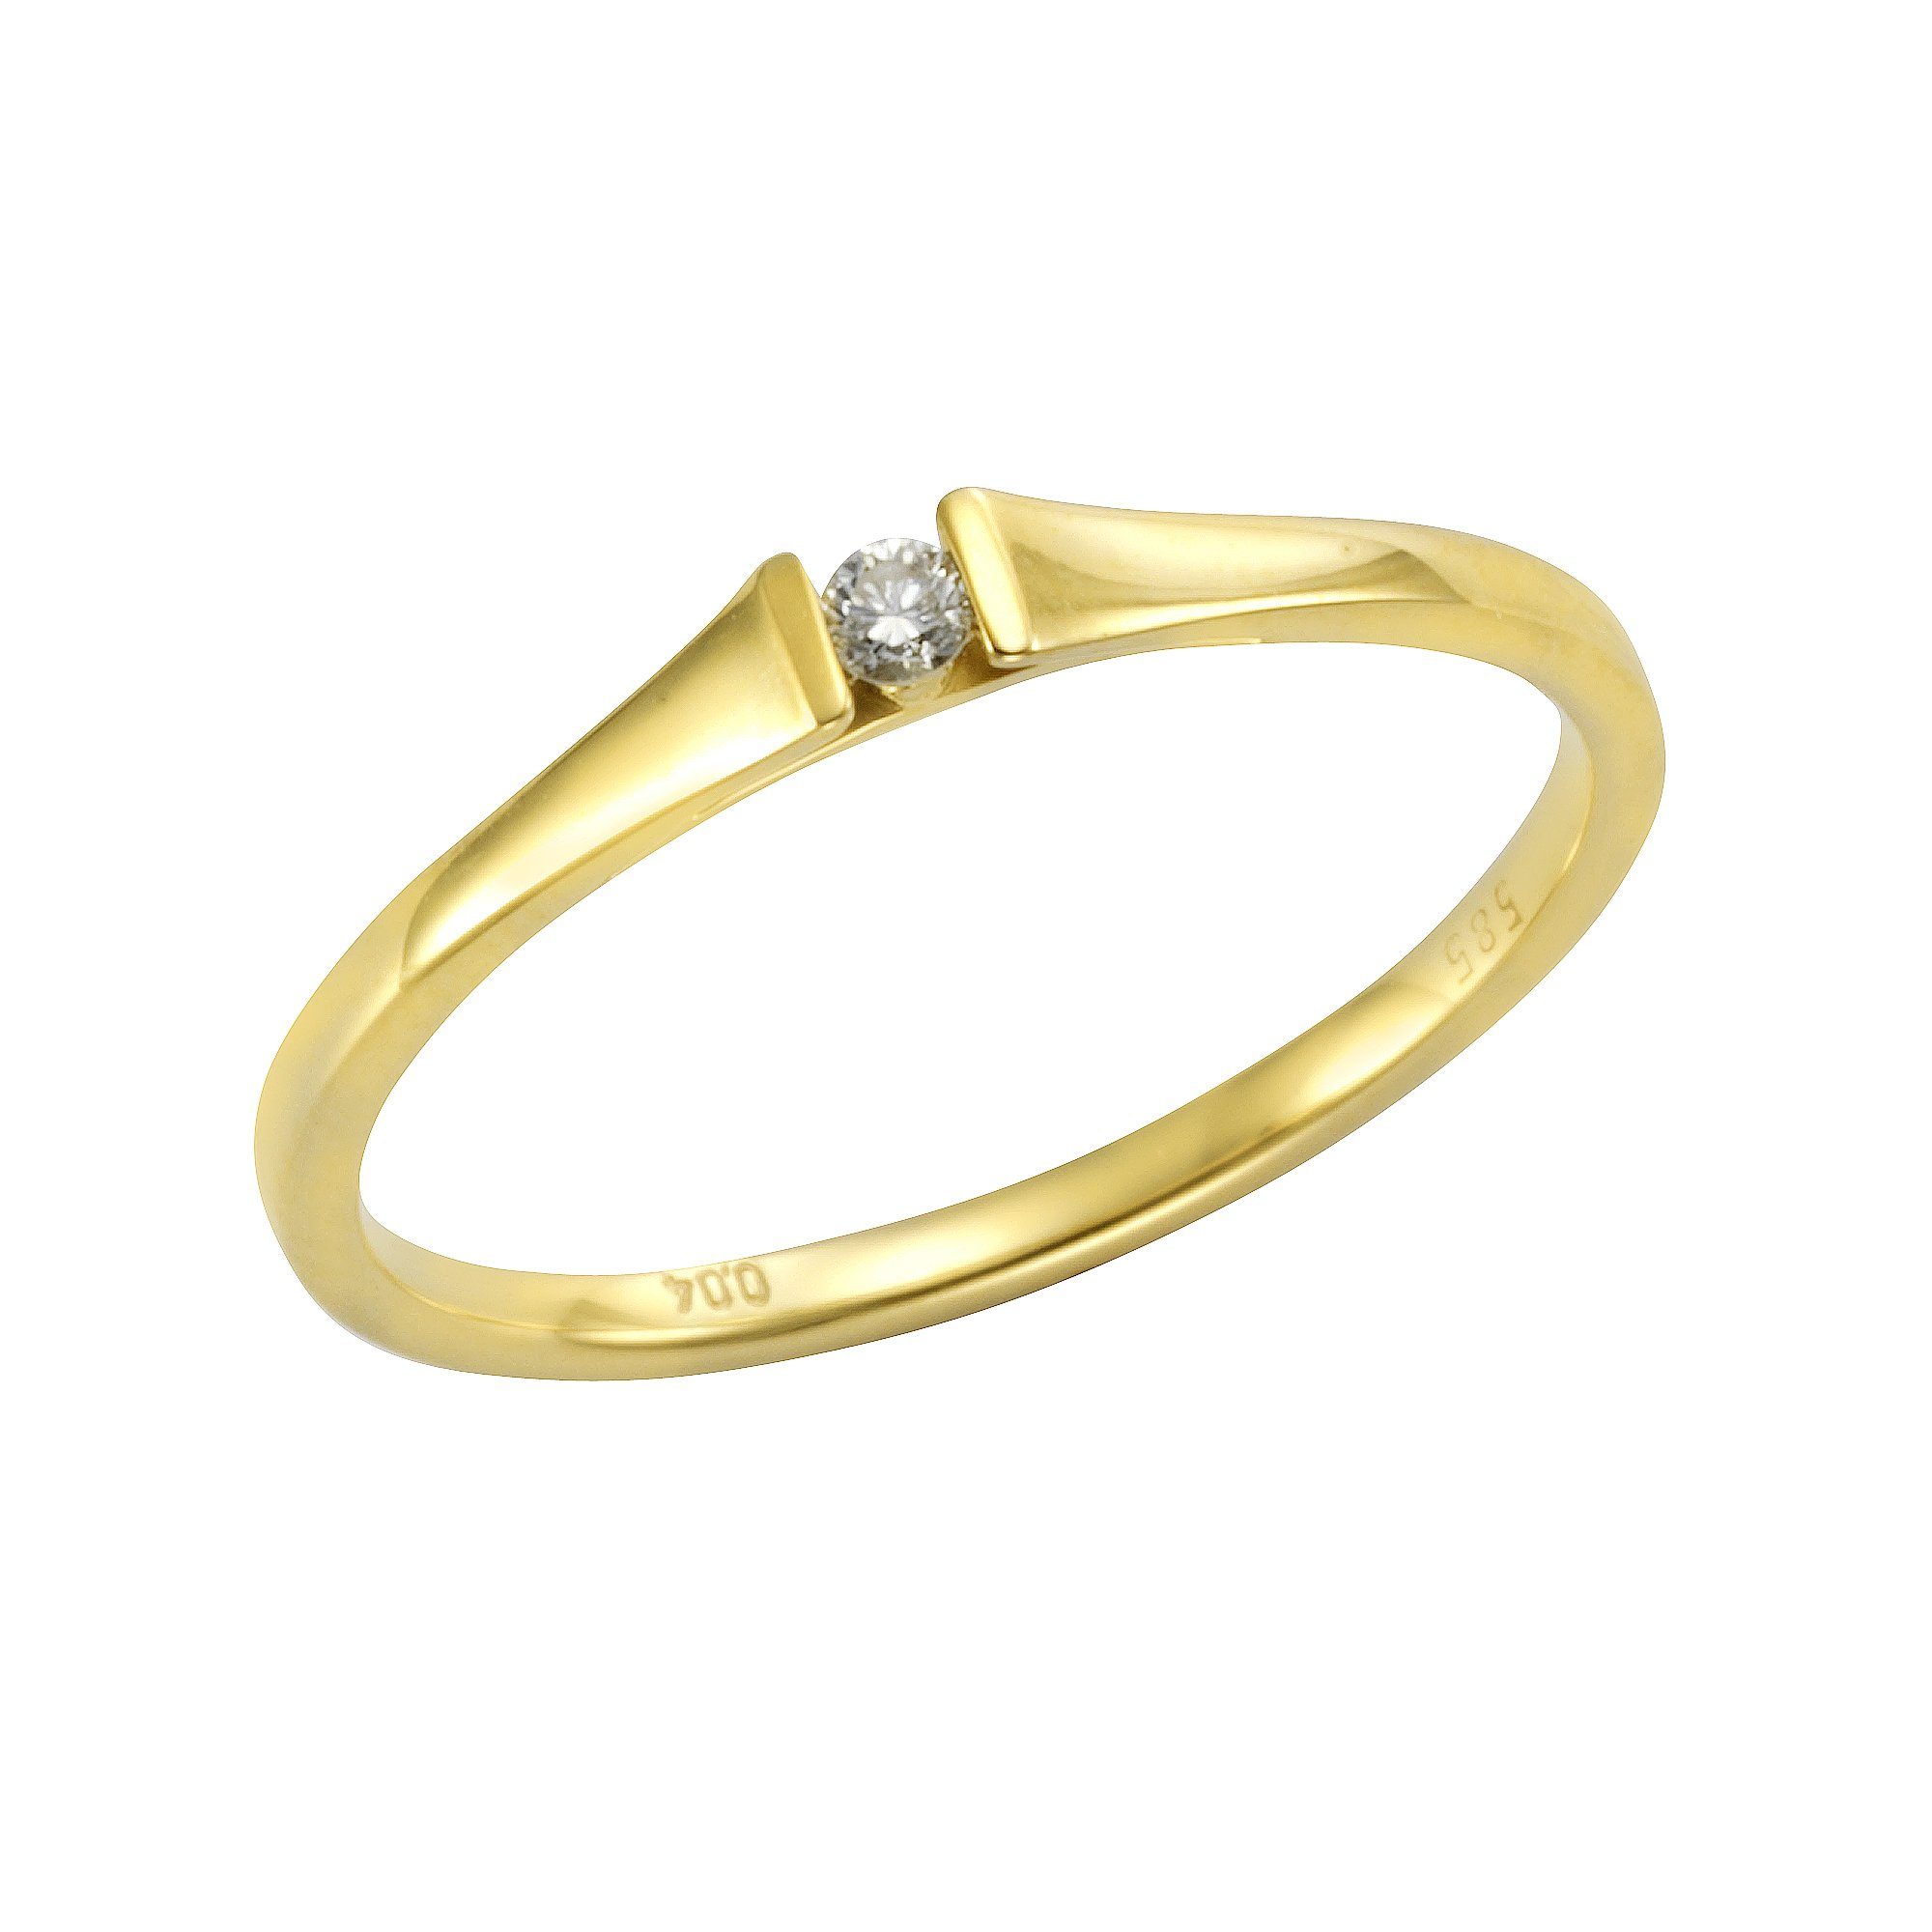 Orolino Fingerring 585 Gold Brillant 0,04ct., Das ideale Geschenk für die  Frau oder Freundin